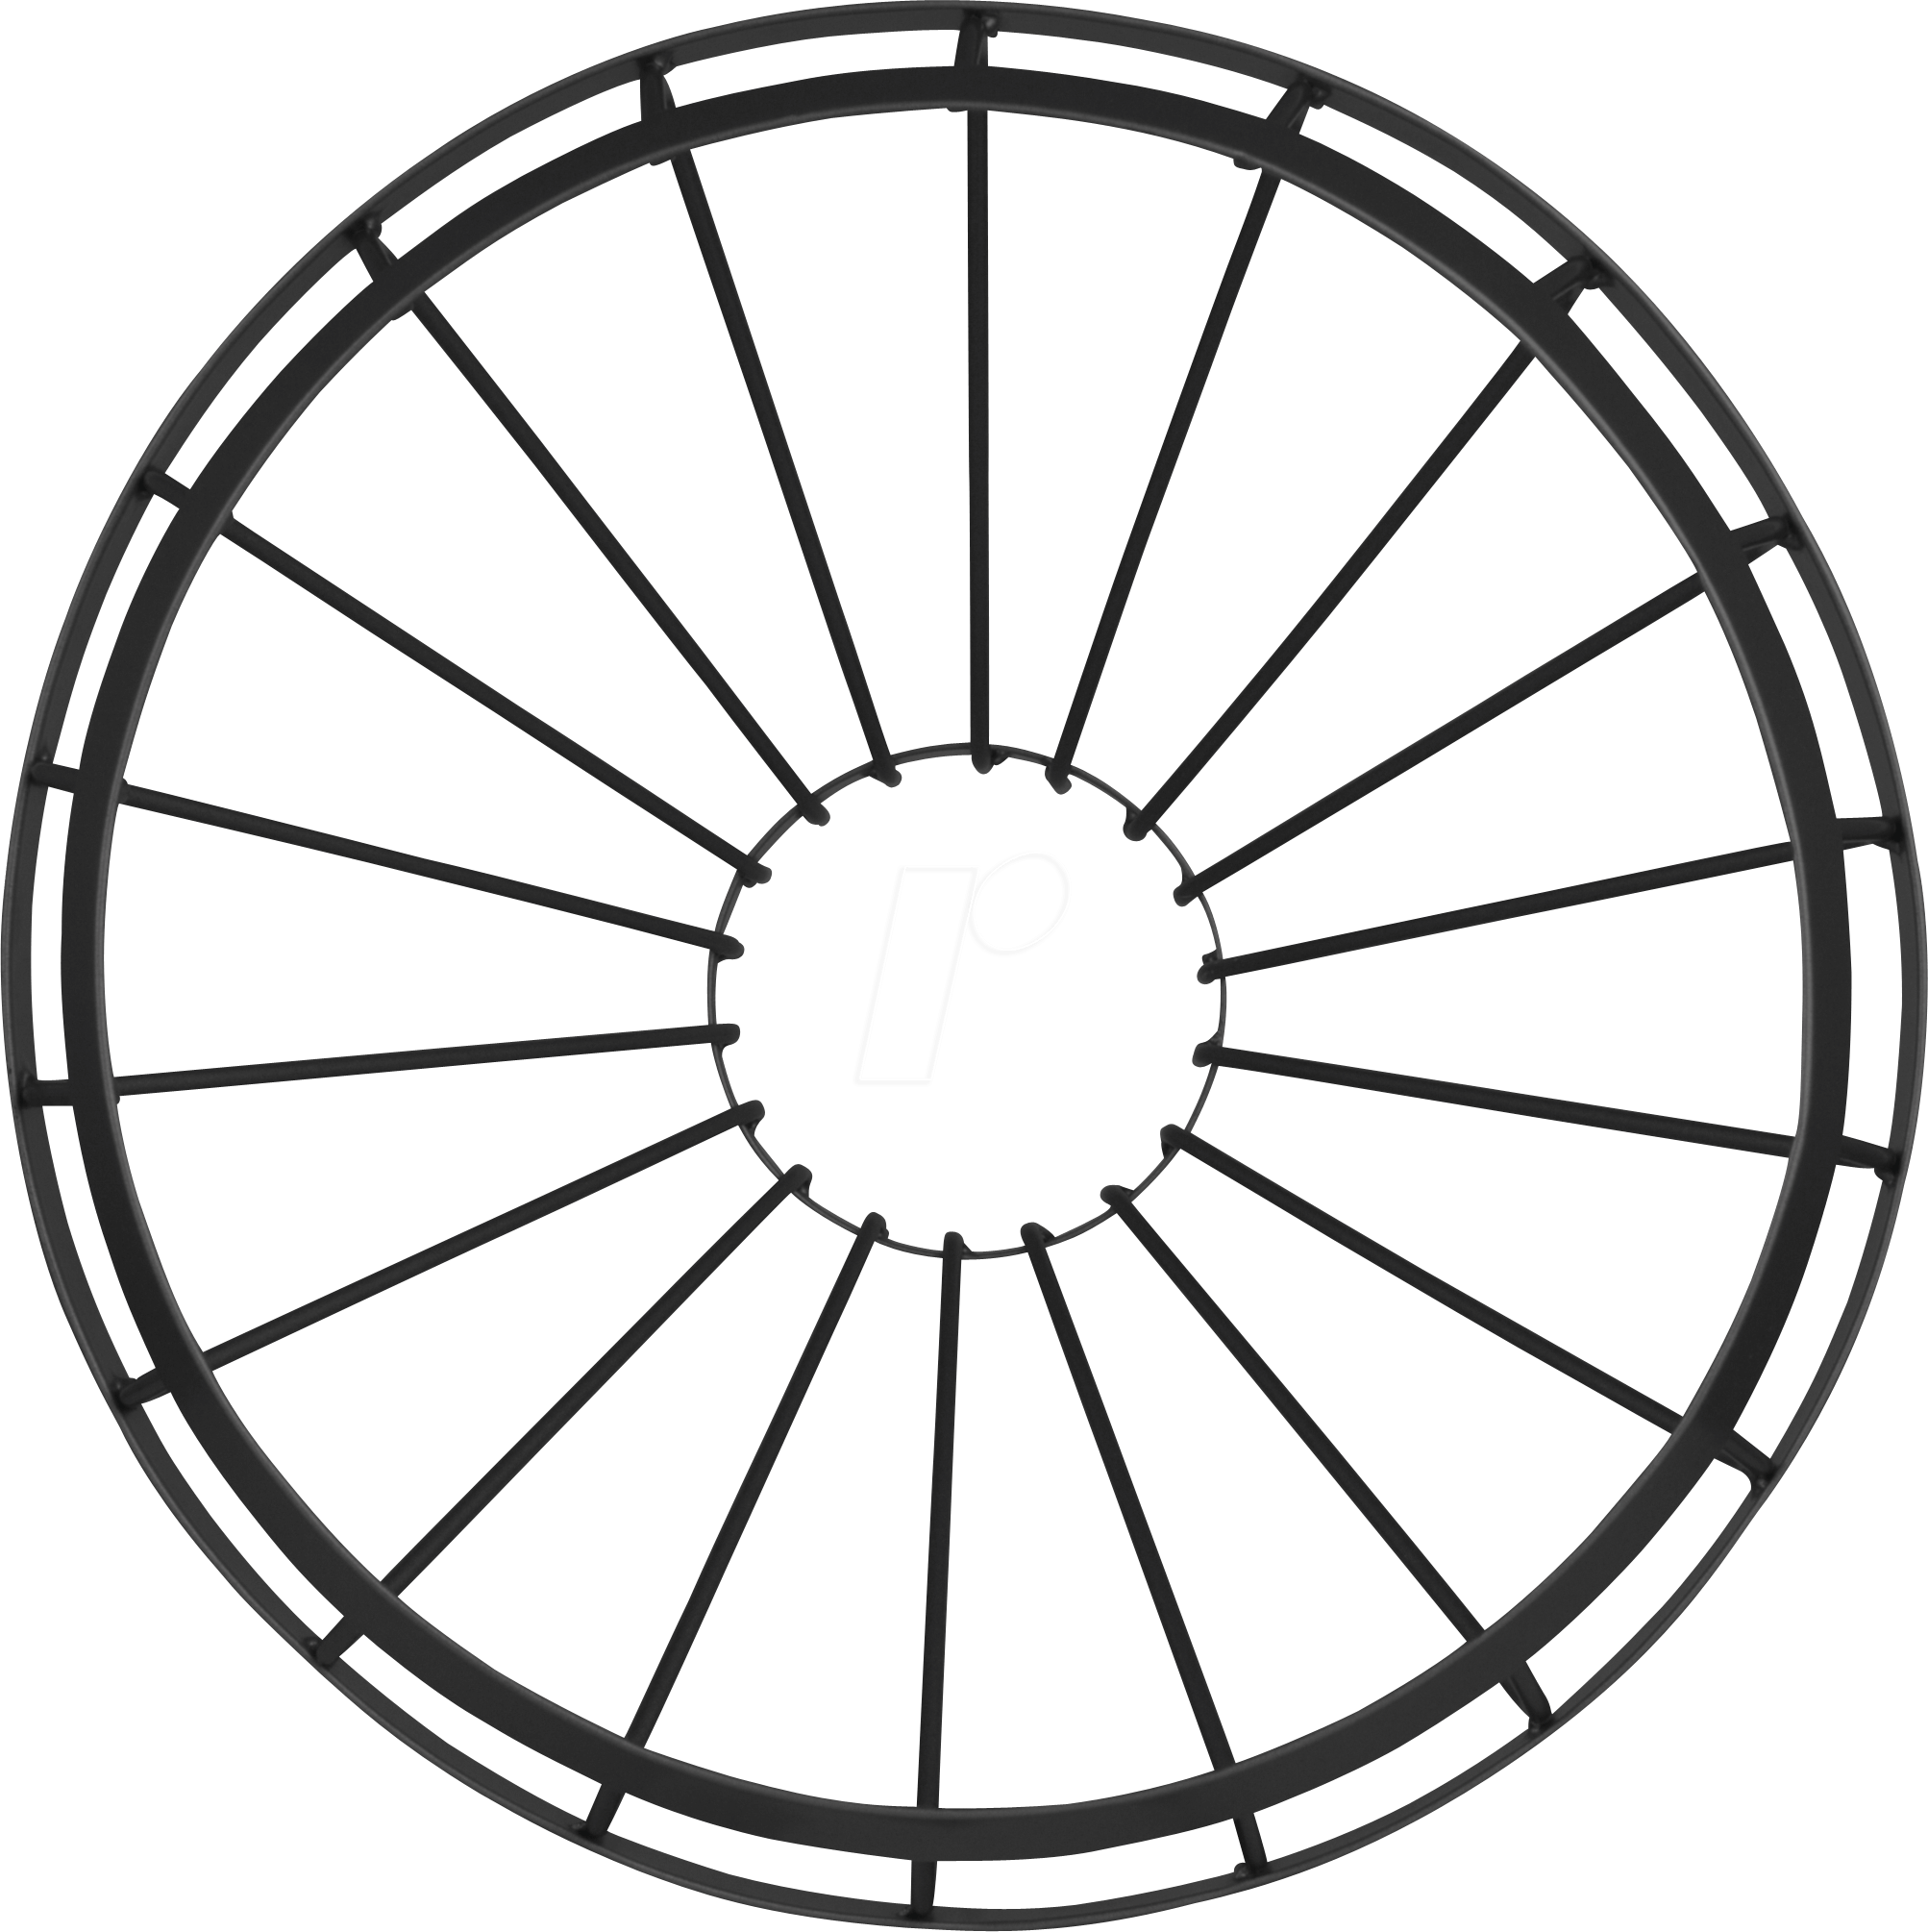 Lampshade Cage Für Vintage 1906 Pendulum, Black Osram - Fulcrum Racing 1 2014 (2006x2010)